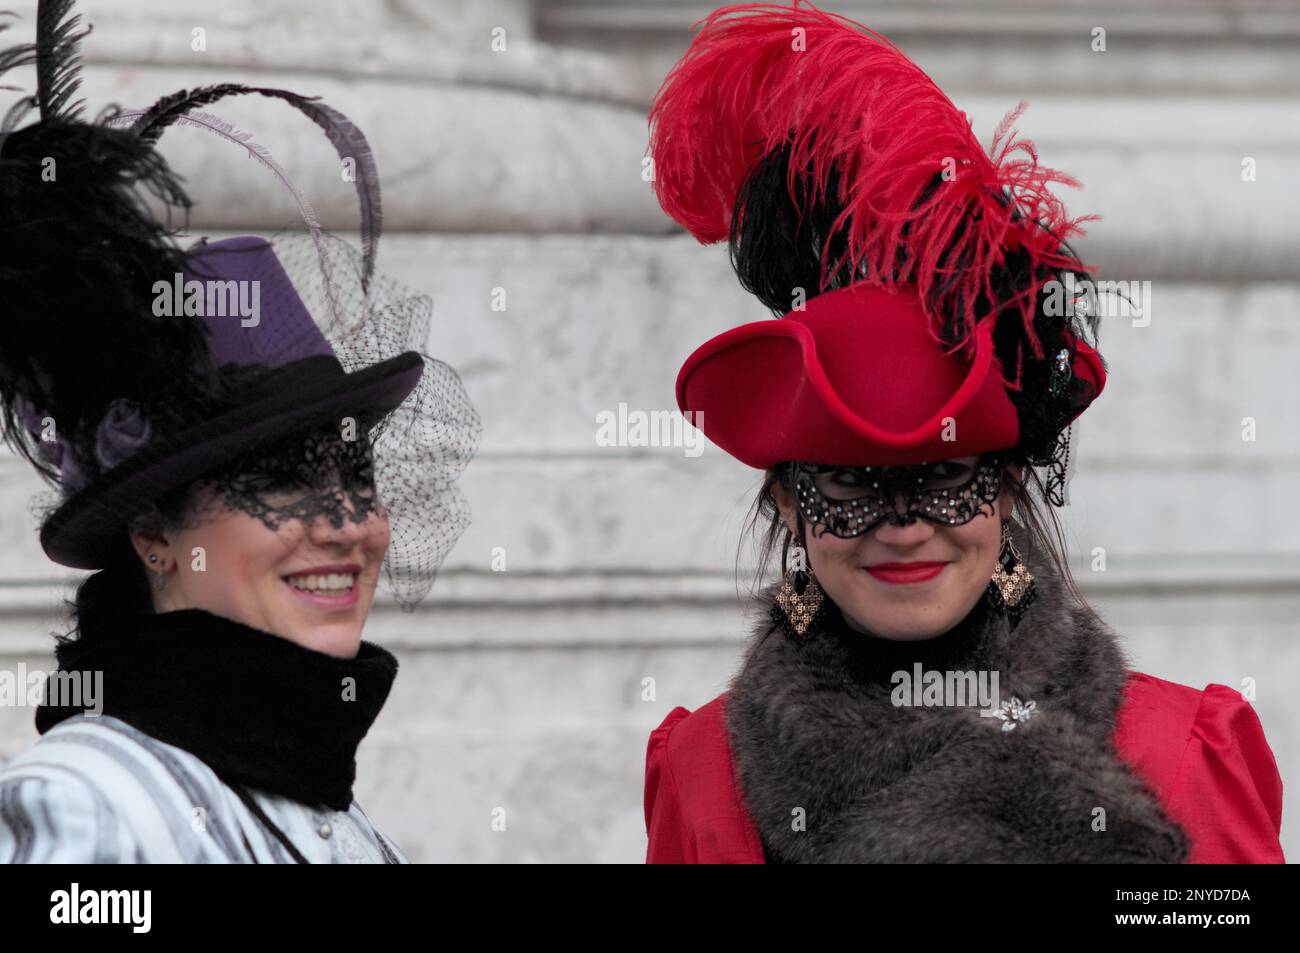 Belles filles masquées avec des chapeaux colorés, au carnaval de Venise, Italie Banque D'Images